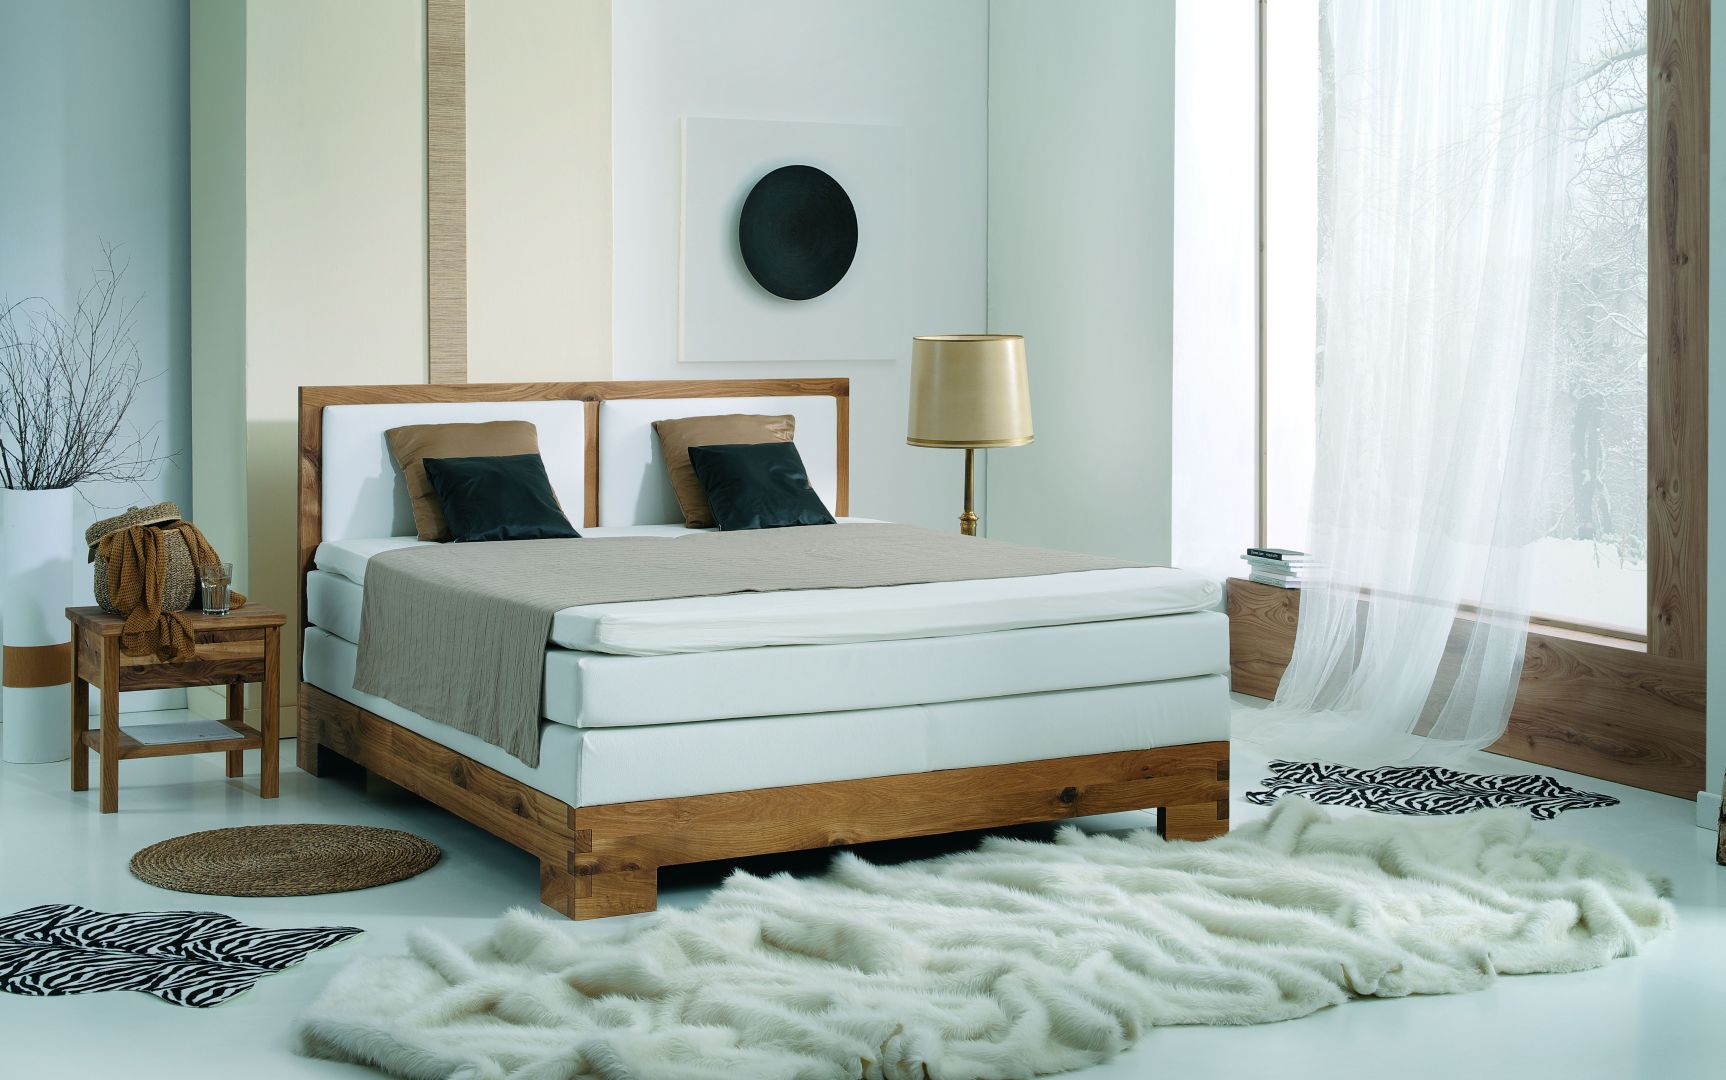 Łóżko Kopenhagen. Na solidnej ramie łóżka umieszczono wygodne materace, które zapewnią komfort nawet najbardziej wymagającej osobie. Fot. Selene